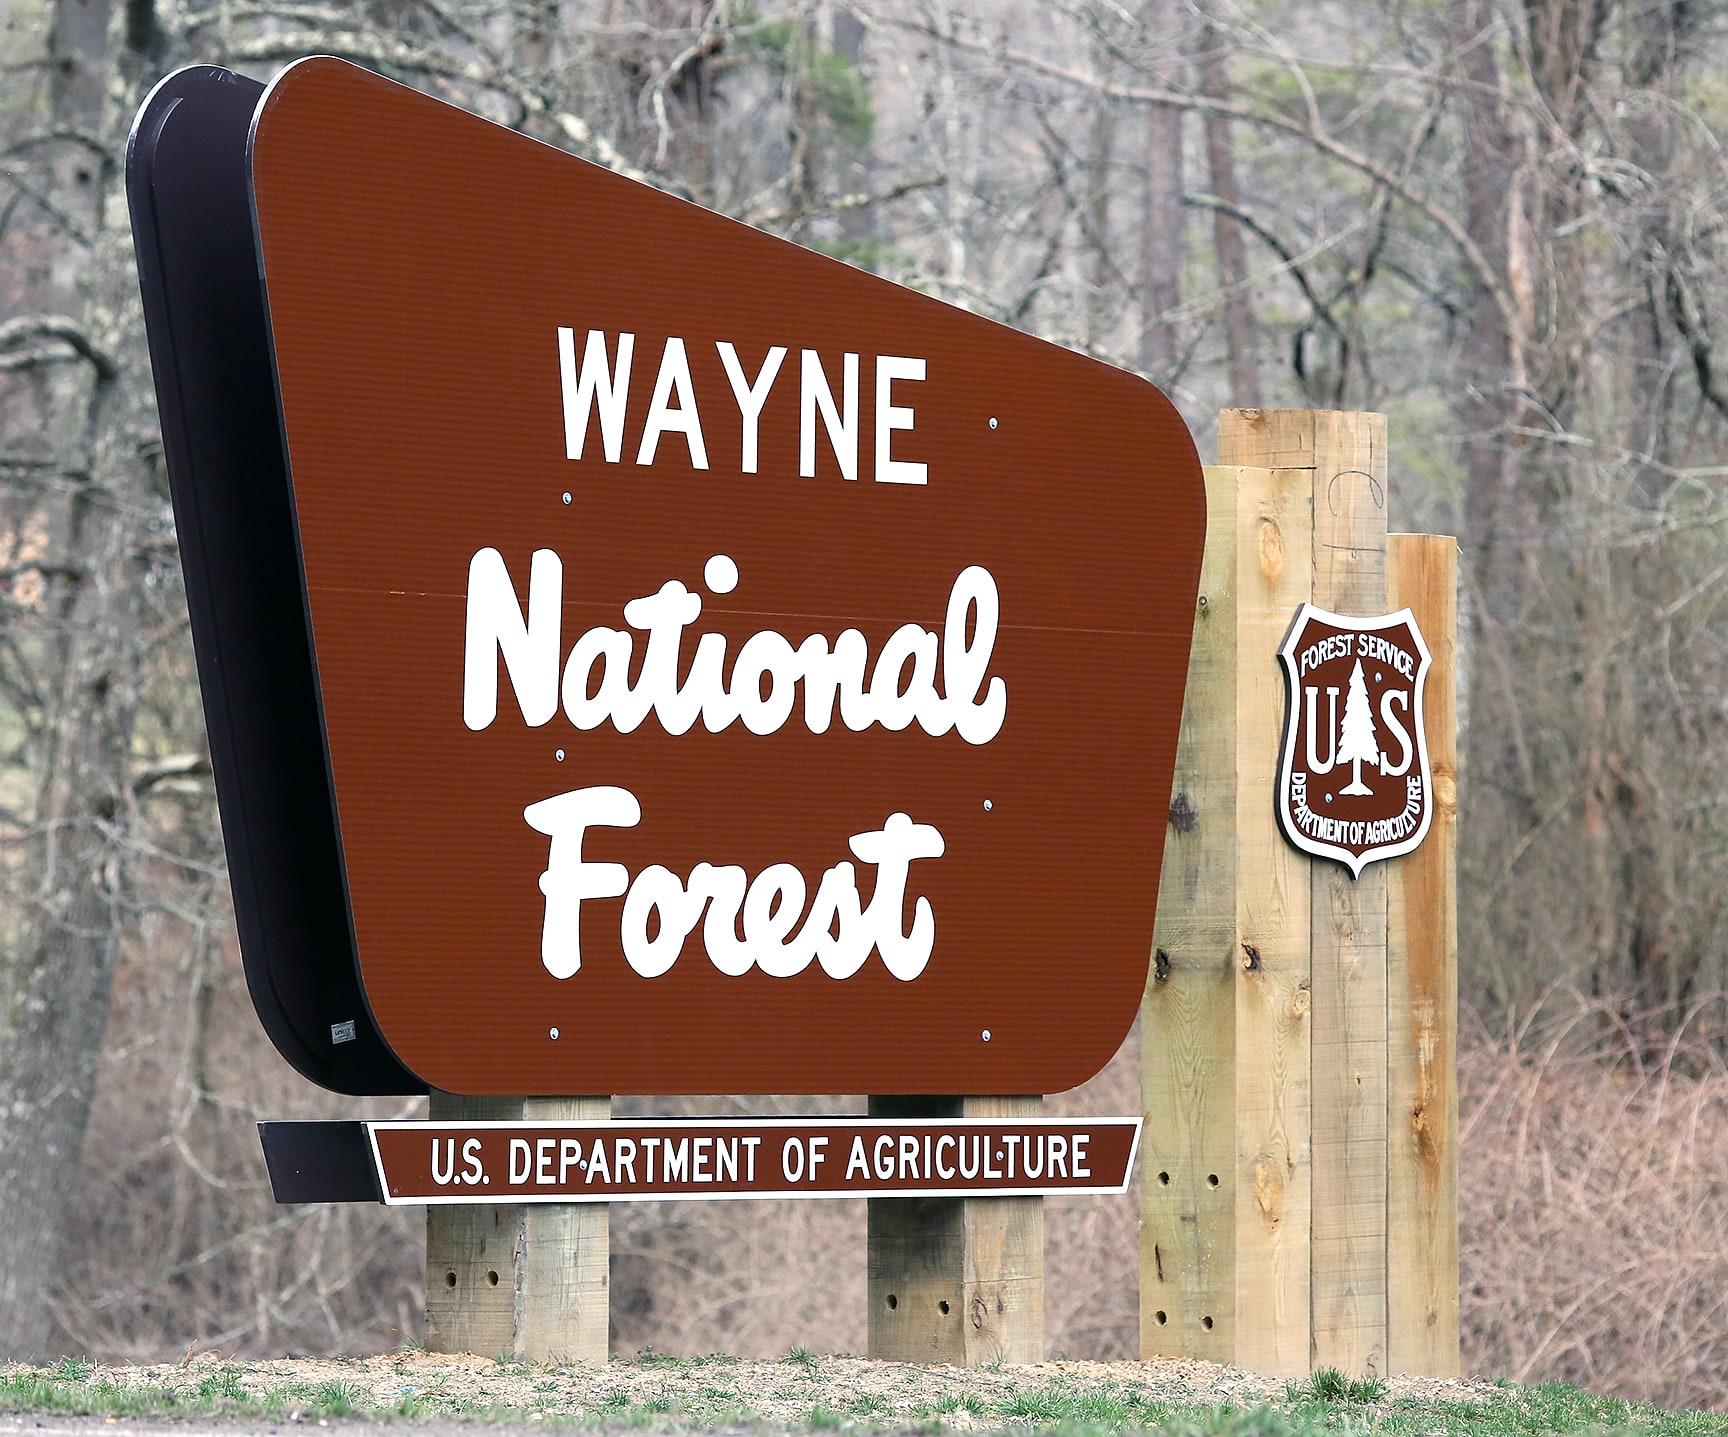 Wayne National Forest, Vereinigte Staaten